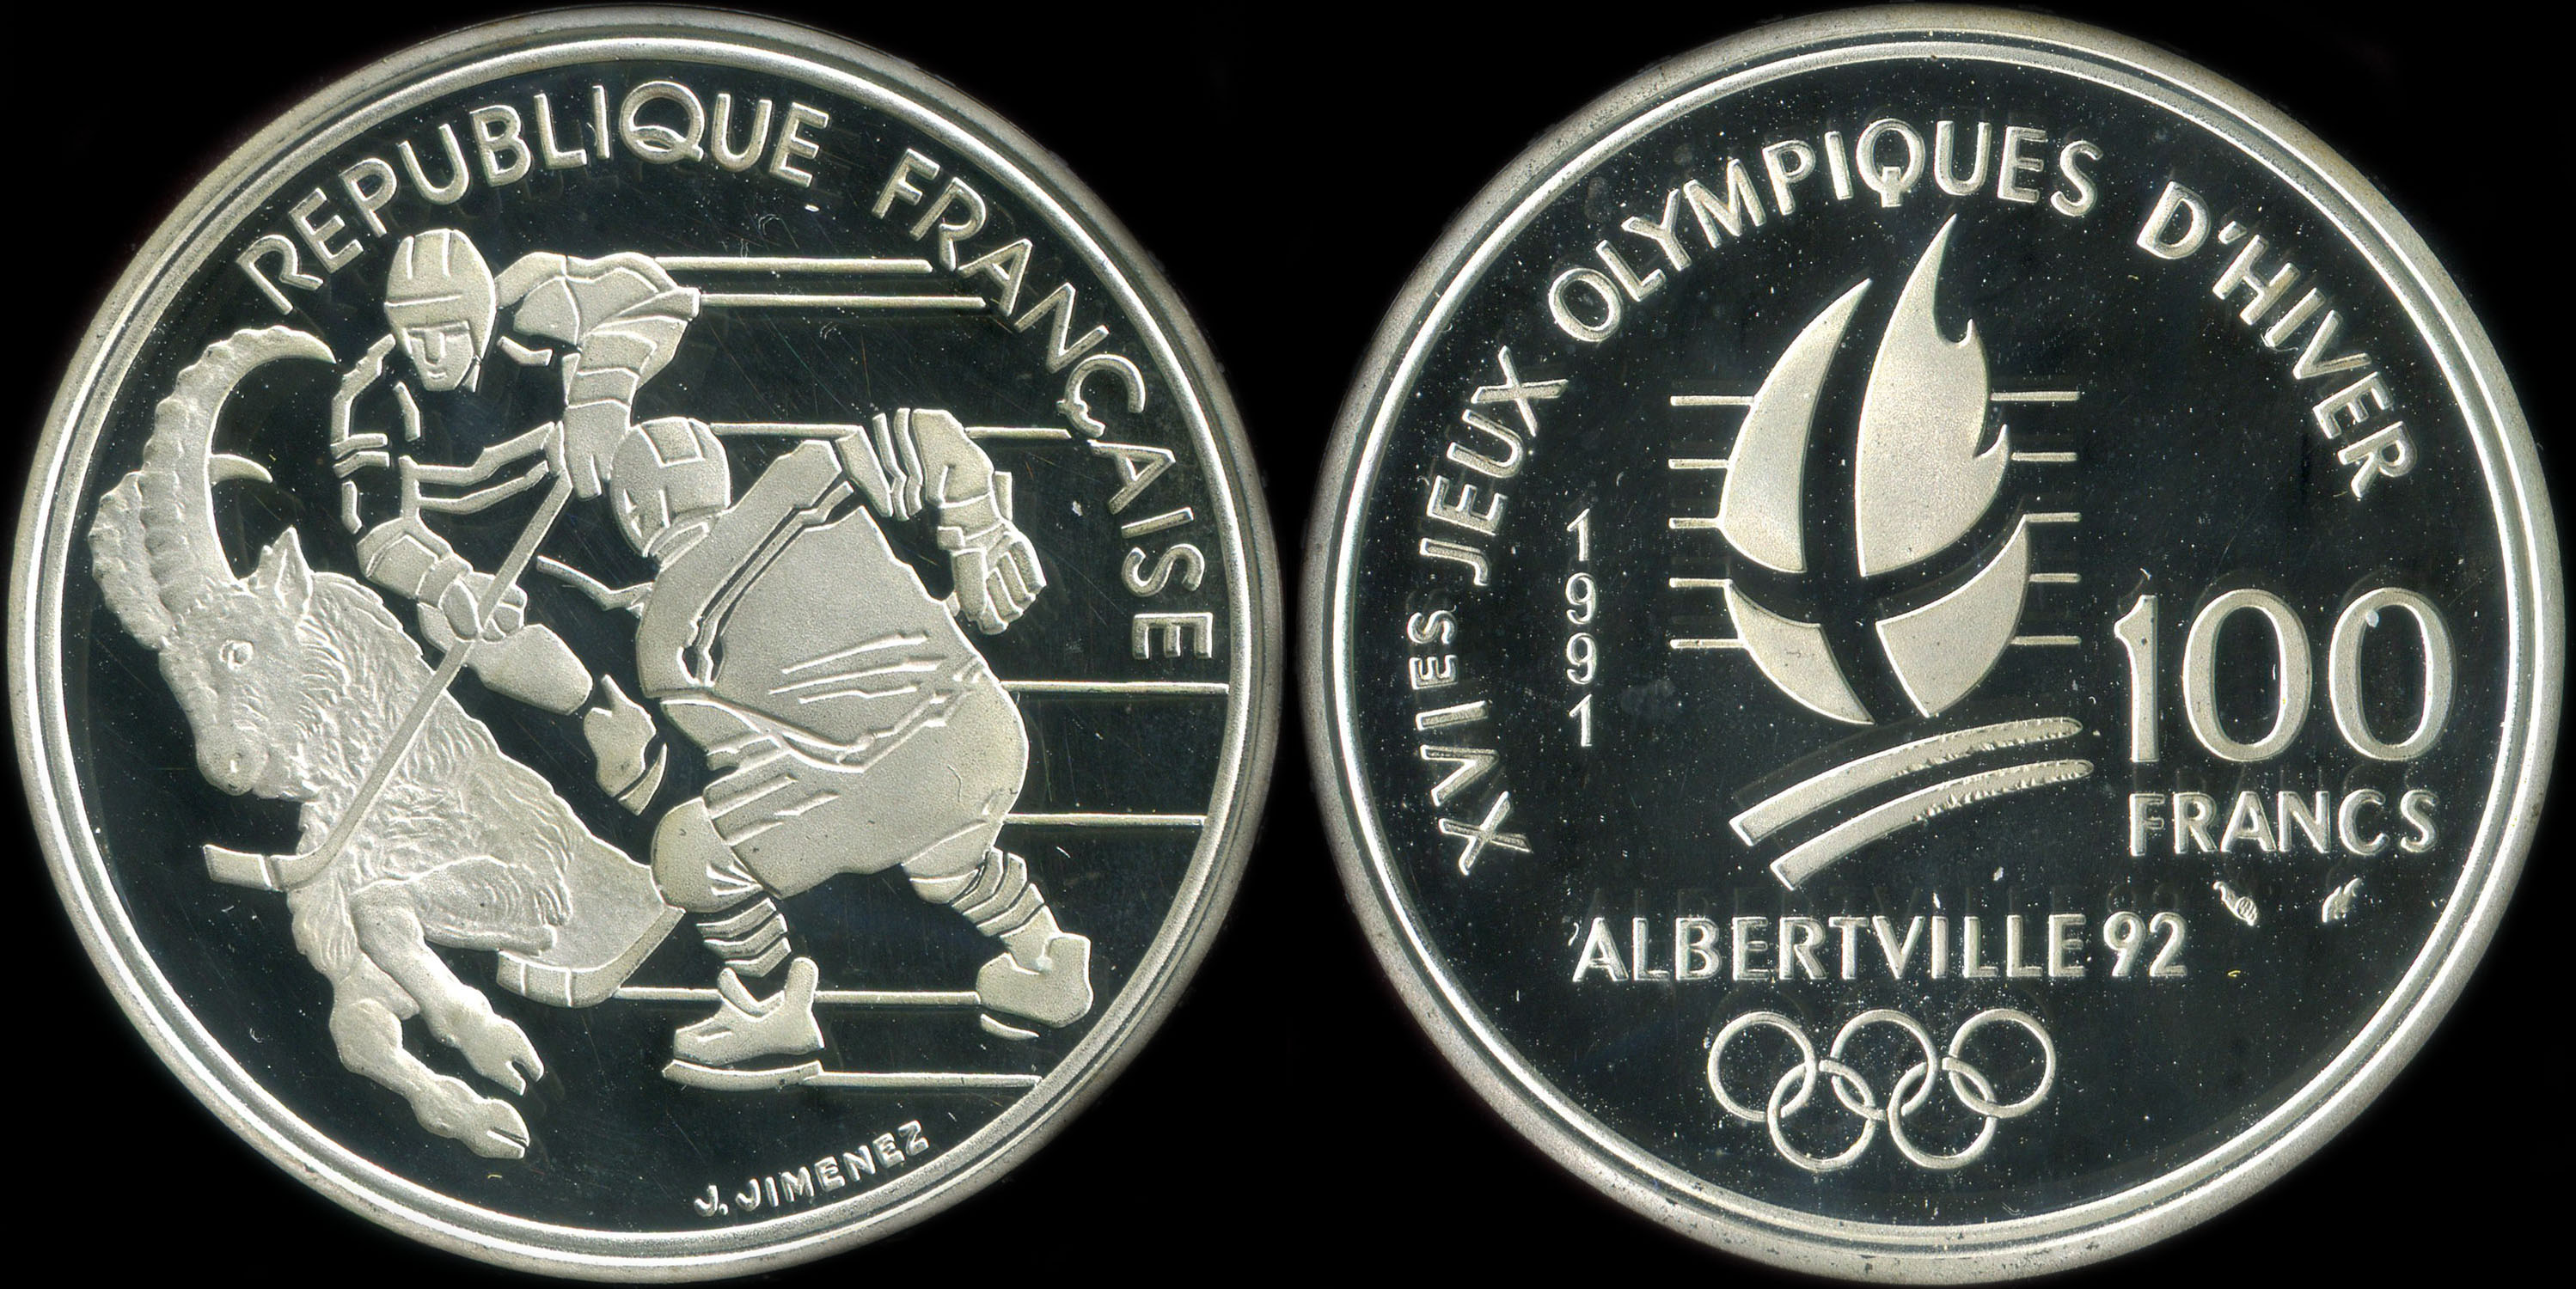 Pice de 100 francs 1991 - XVIes Jeux Olympiques d'Hiver - Albertville 92 - Hockey sur Glace - Bouquetin